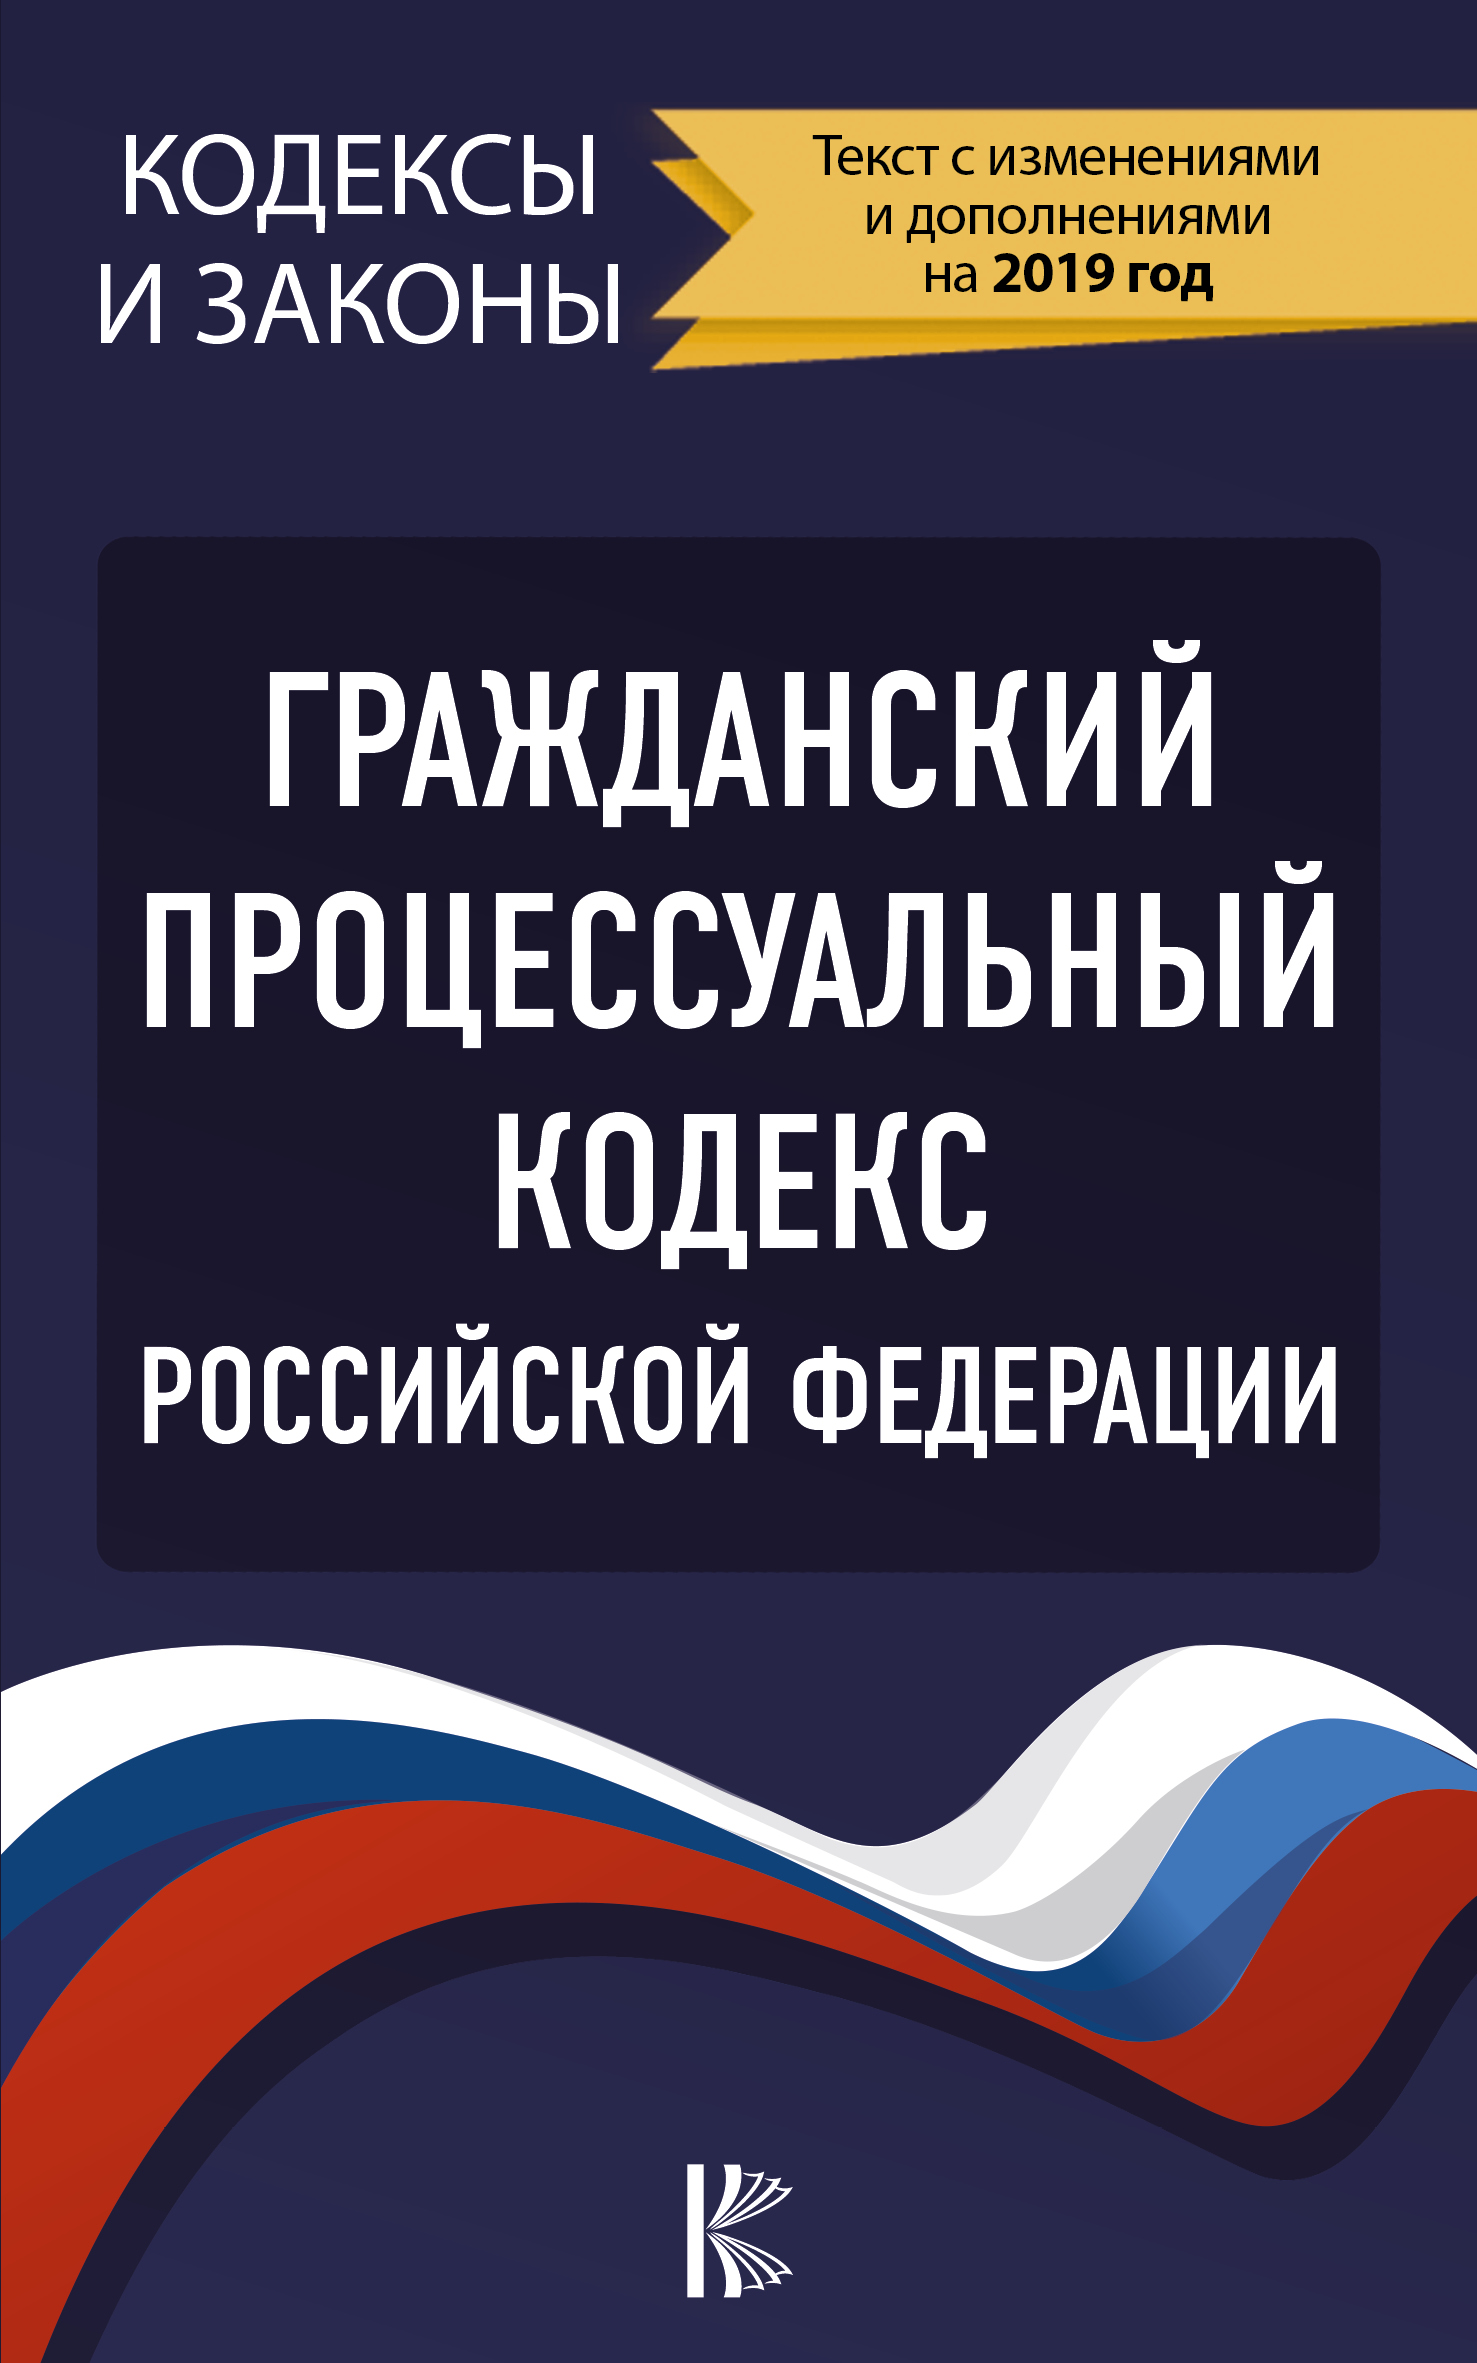  Гражданский процессуальный Кодекс Российской Федерации на 2019 год - страница 0